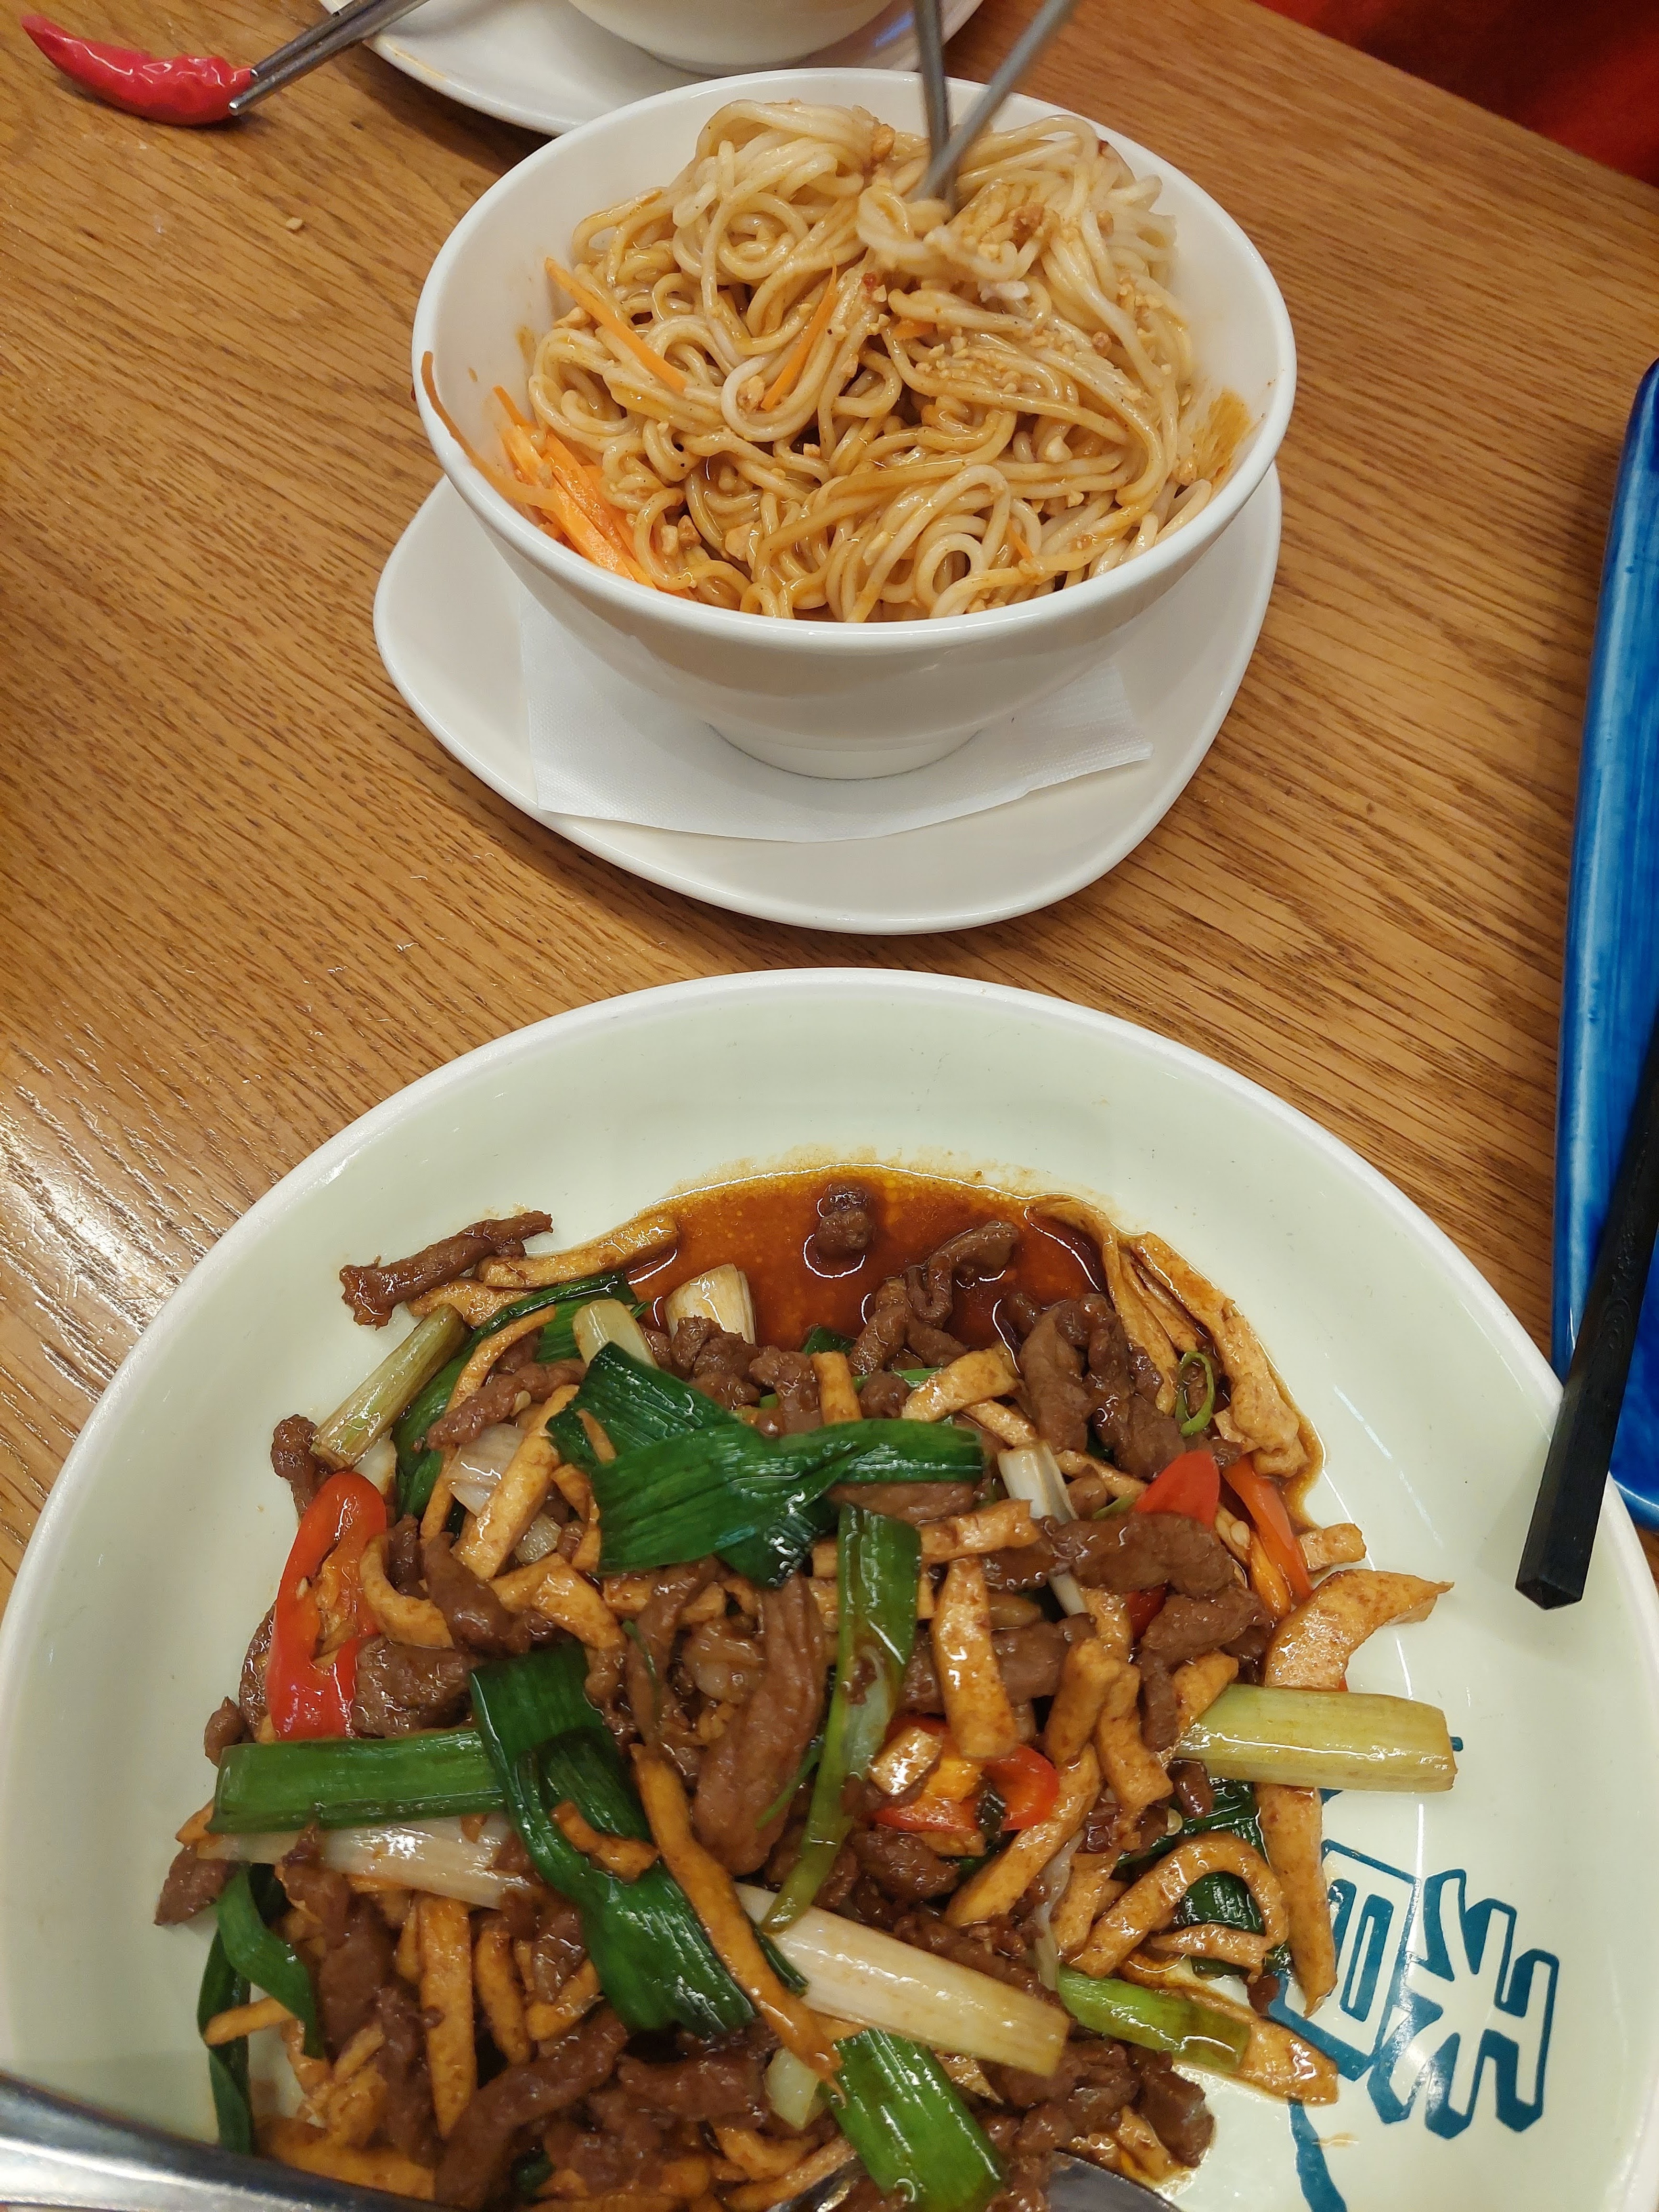 Dry noodles with sesame/stir-fried pork and dried tofu